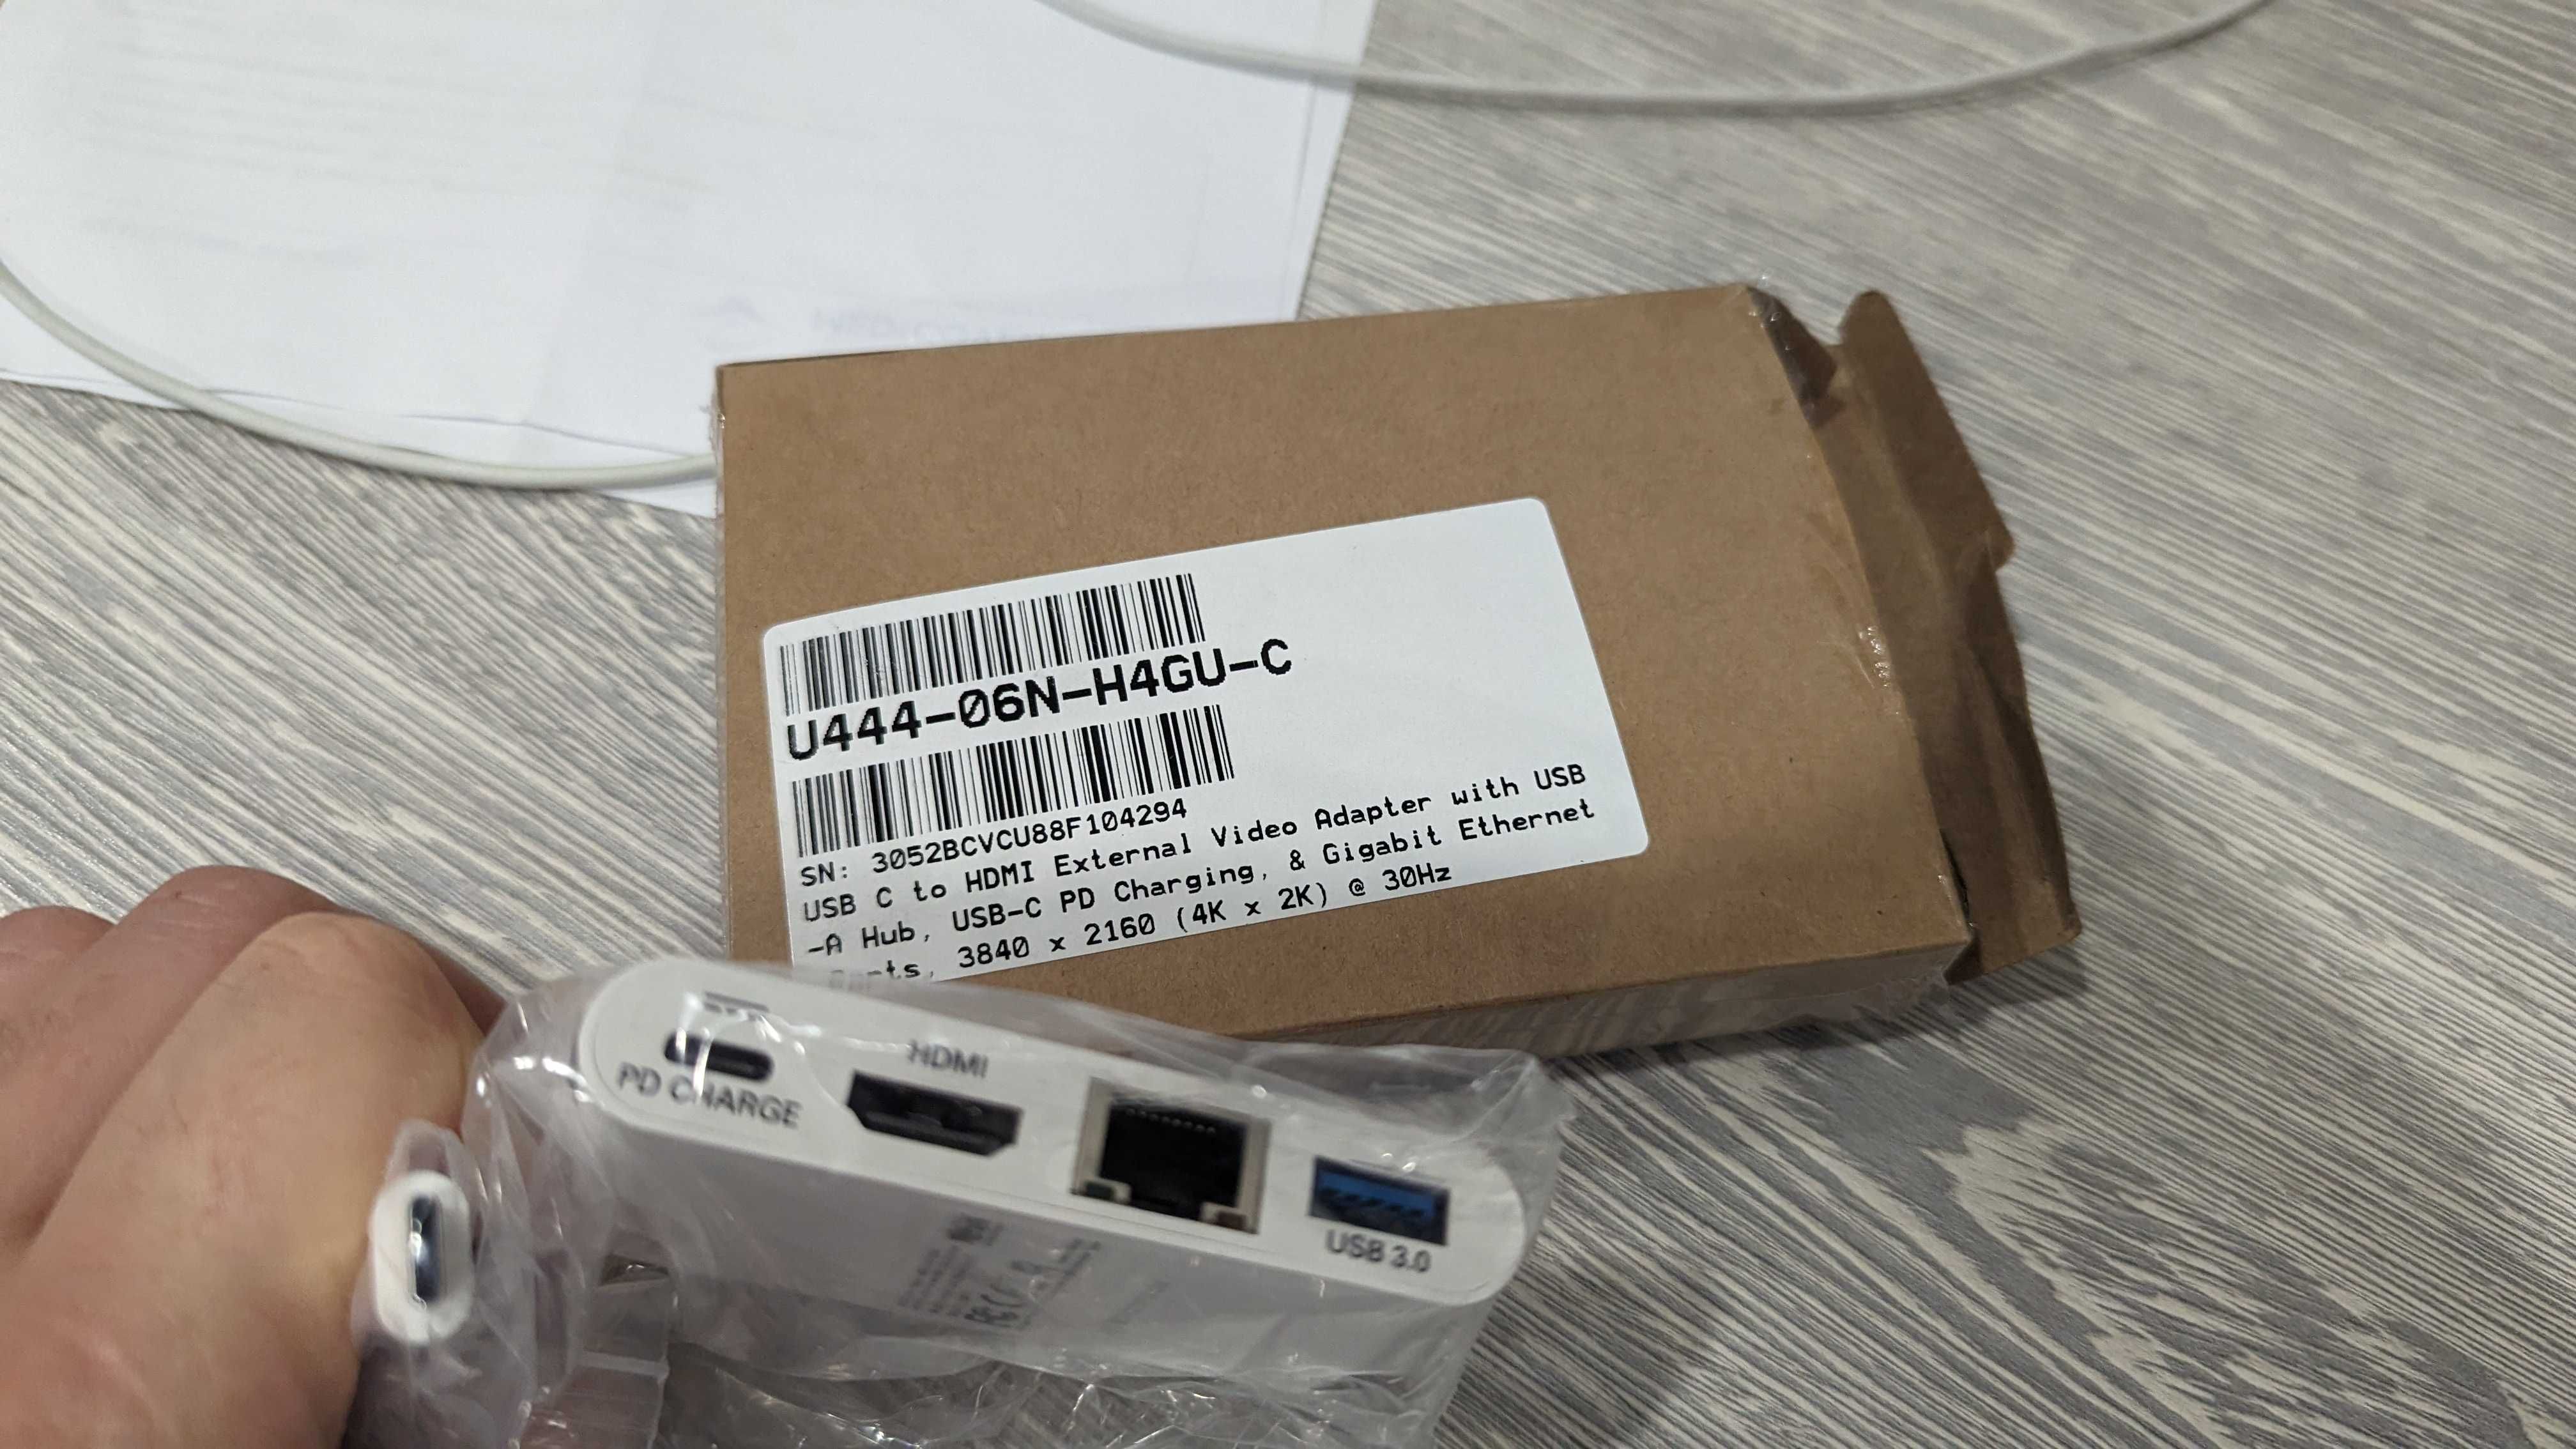 USB-хаб Tripp Lite USB-C + HDMI + RJ45 + USB-A White (U444-06N-H4GU-C)